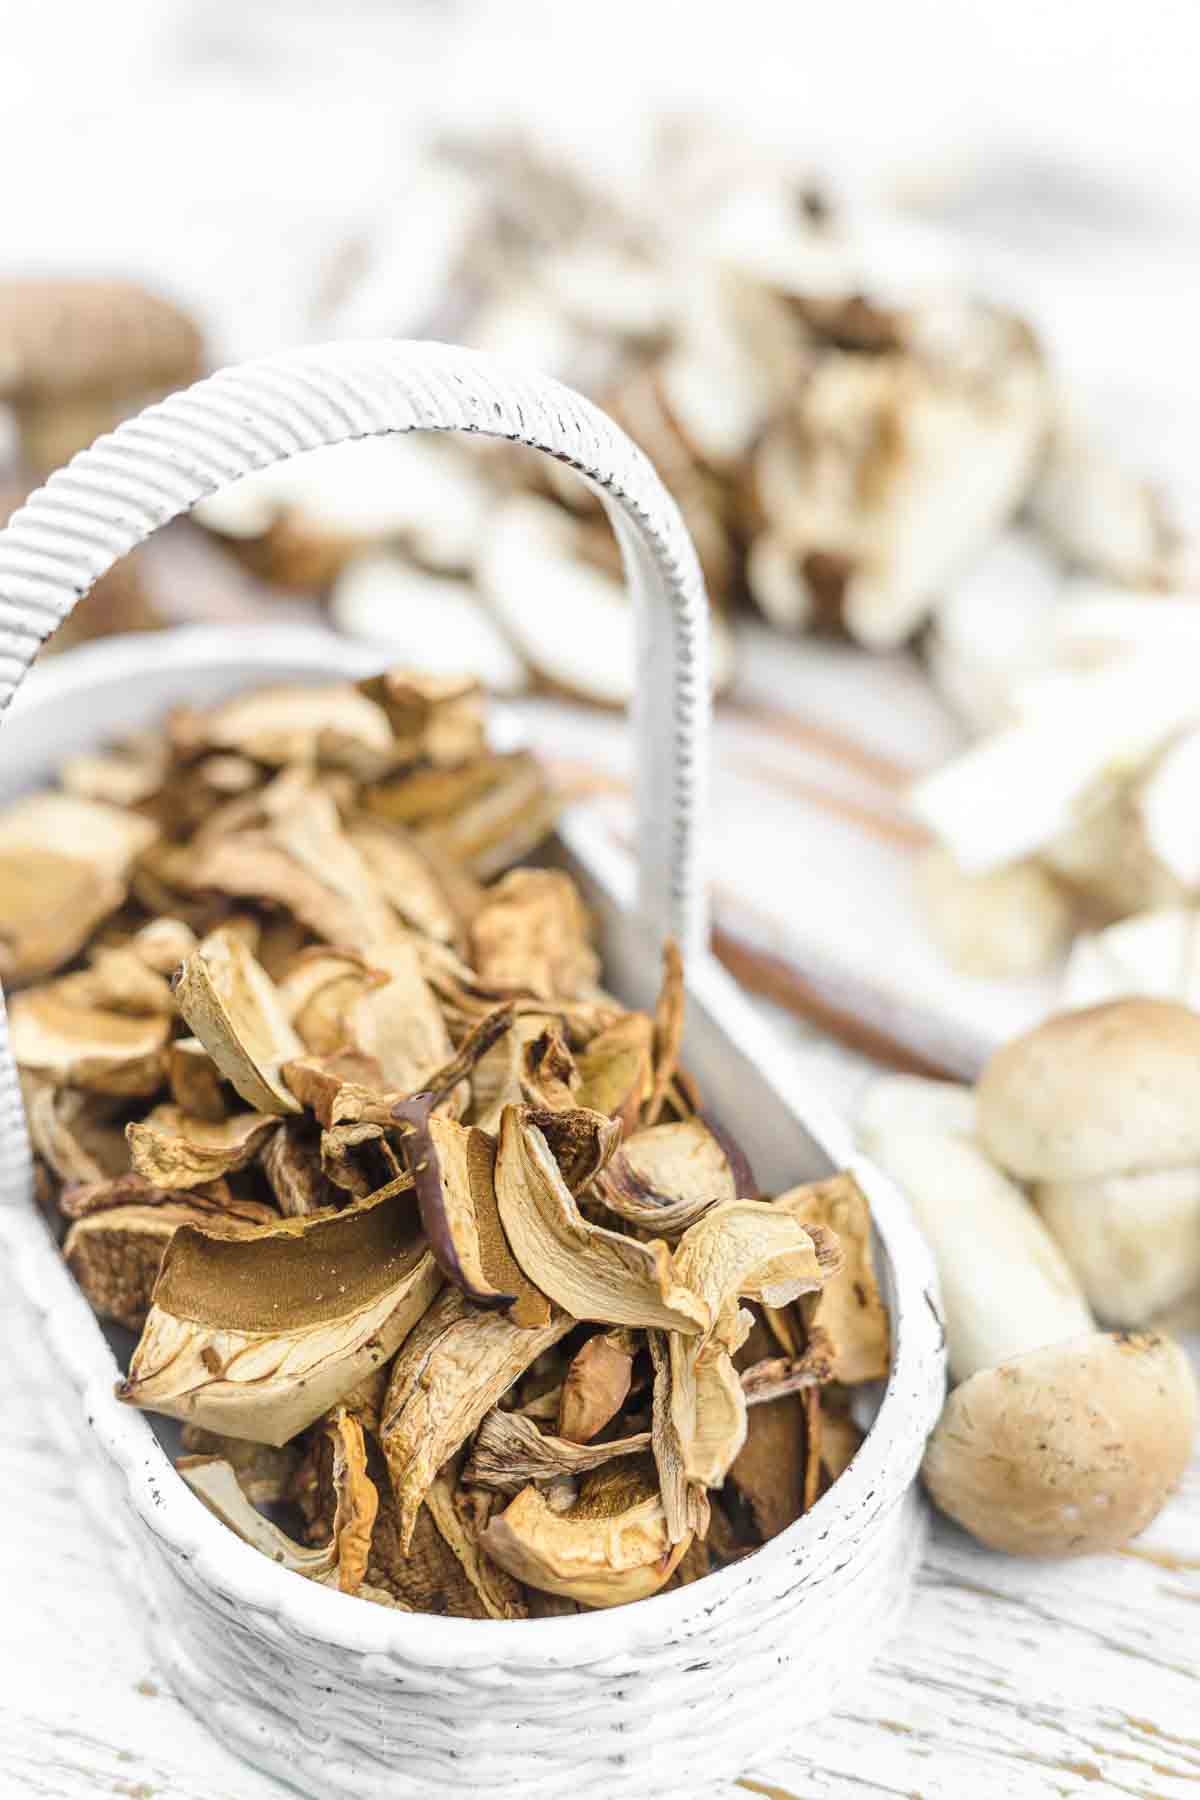 Dry mushrooms in a basket.